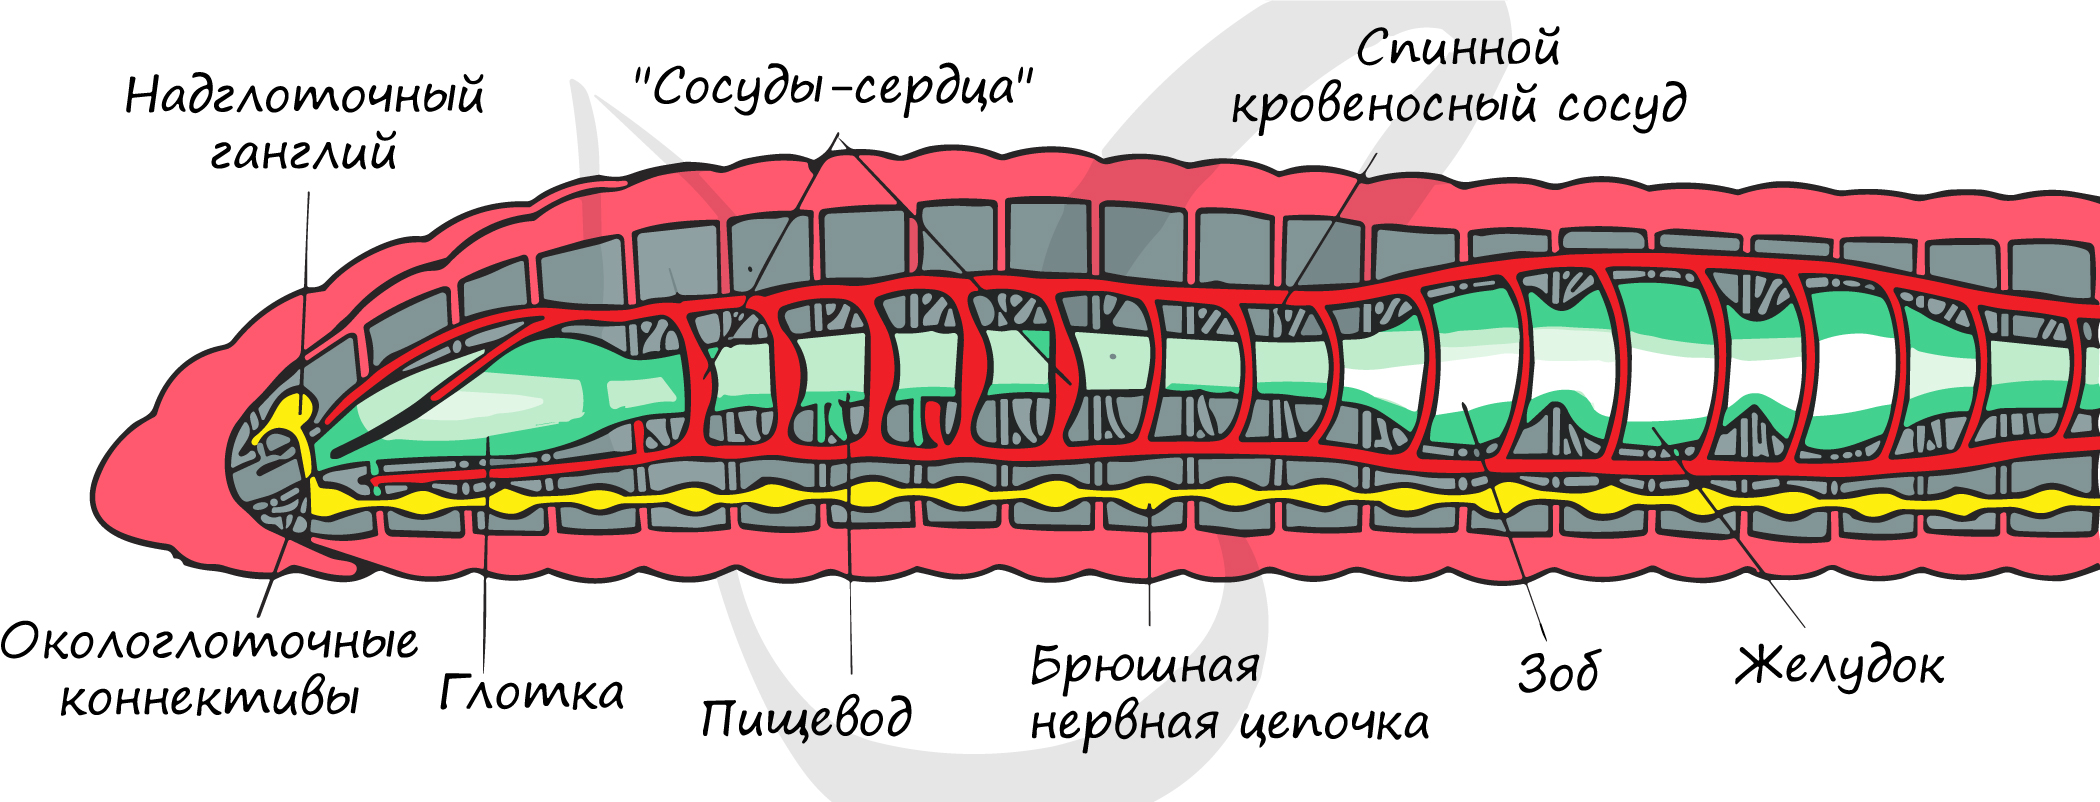 Строение пищеварительной системы червя. Внутреннее строение кольчатого червя рисунок. Кольчатые черви схема строения. Схема продольного разреза дождевого червя. Пищеварительная и выделительная система дождевого червя.